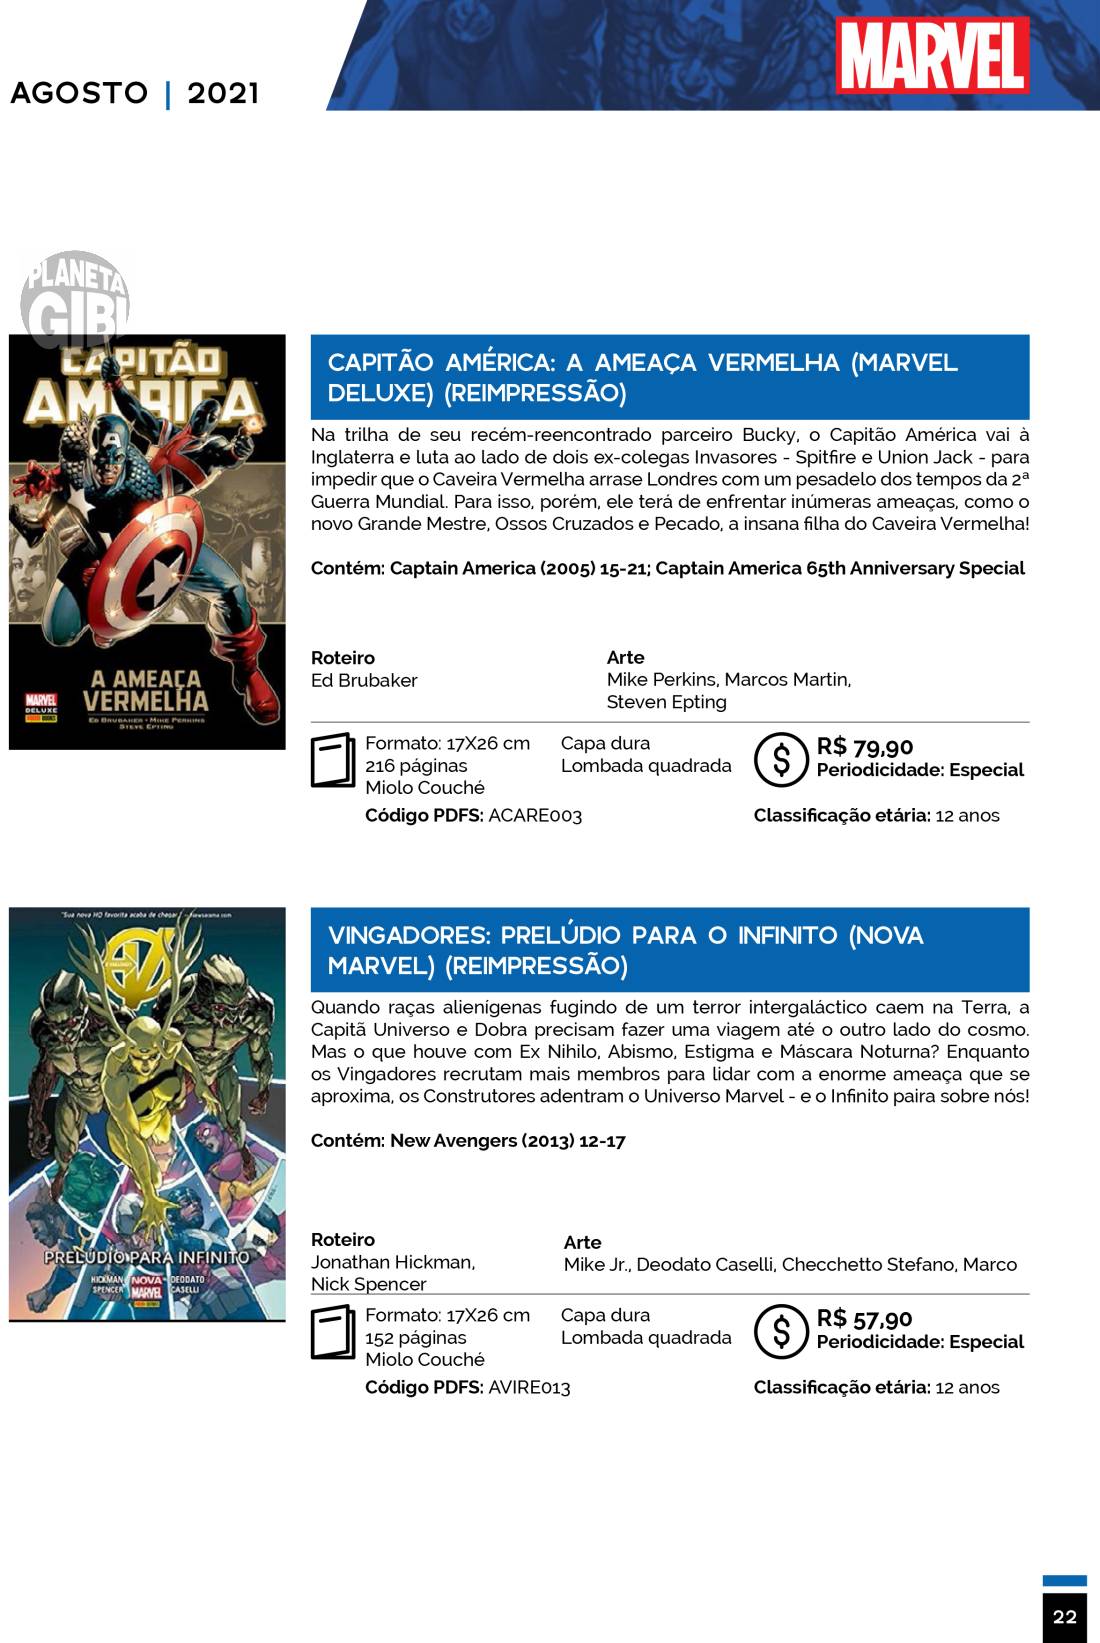 5 - Checklist Marvel/Panini (Julho/2020 - pág.09) - Página 9 Catalogo-Julho-Agosto-22